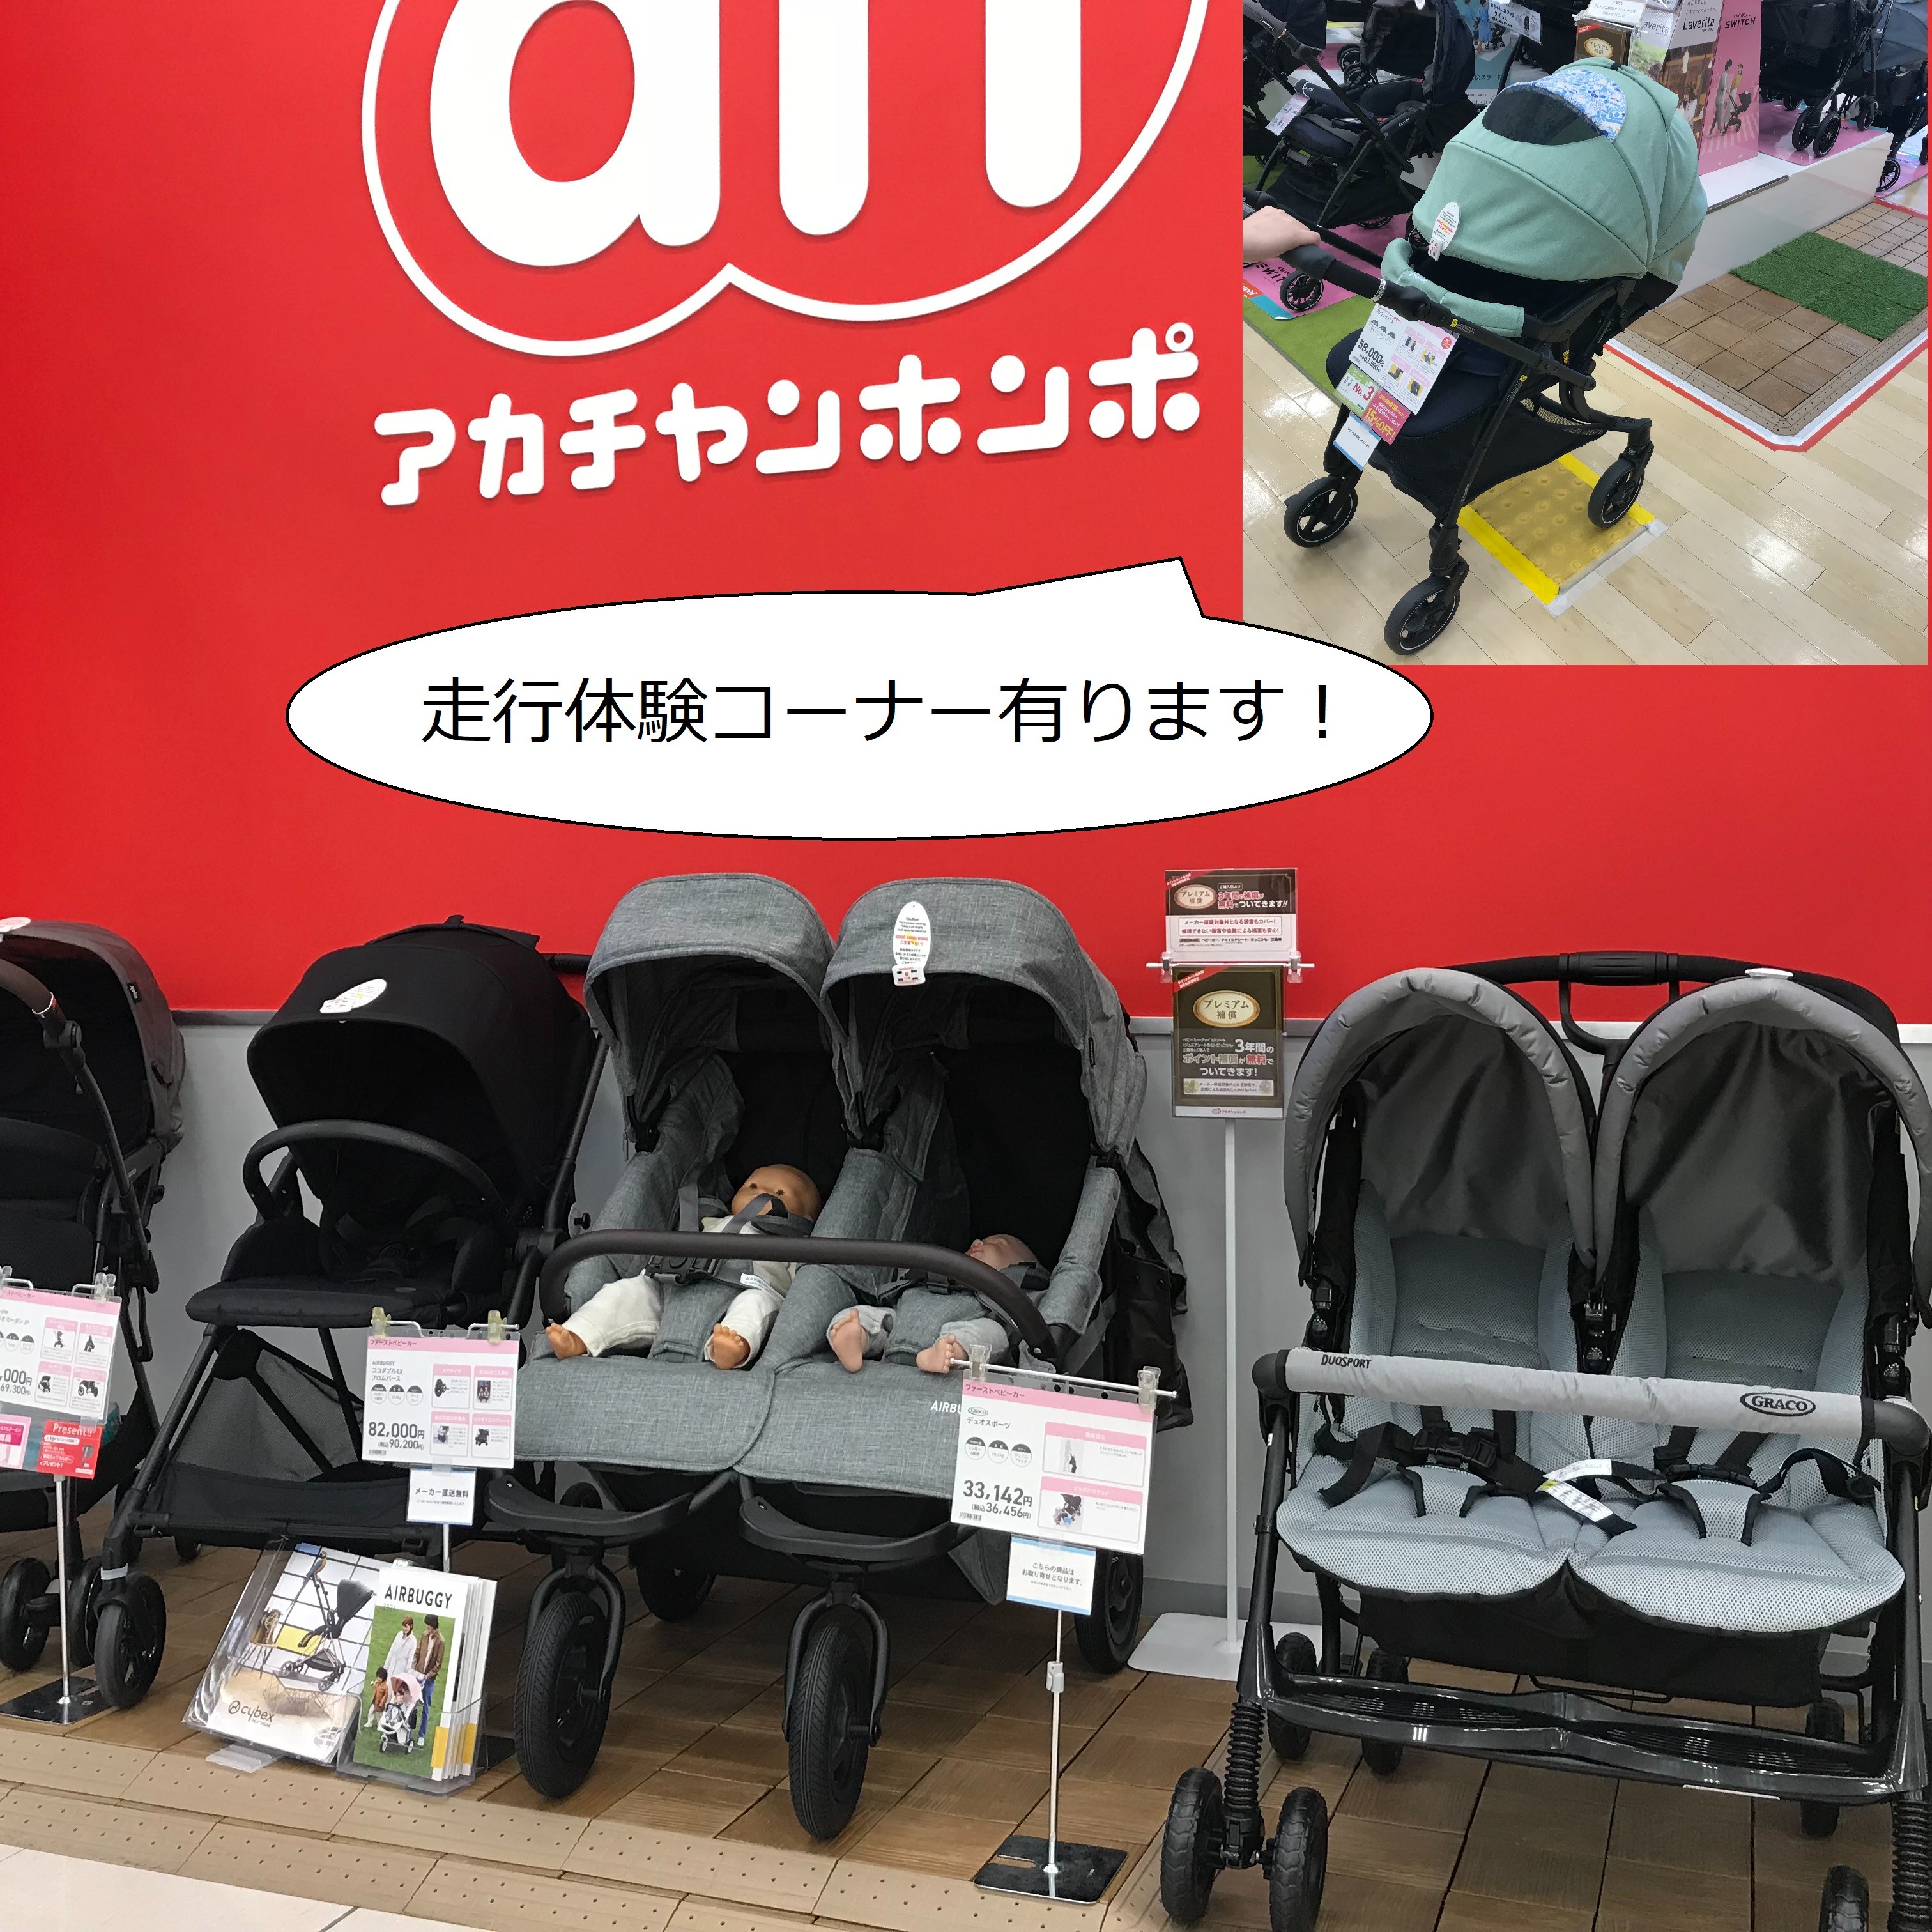 双子用ベビーカーの展示行っております!!　
当店のベビーカー展示は愛知県内最大規模です！